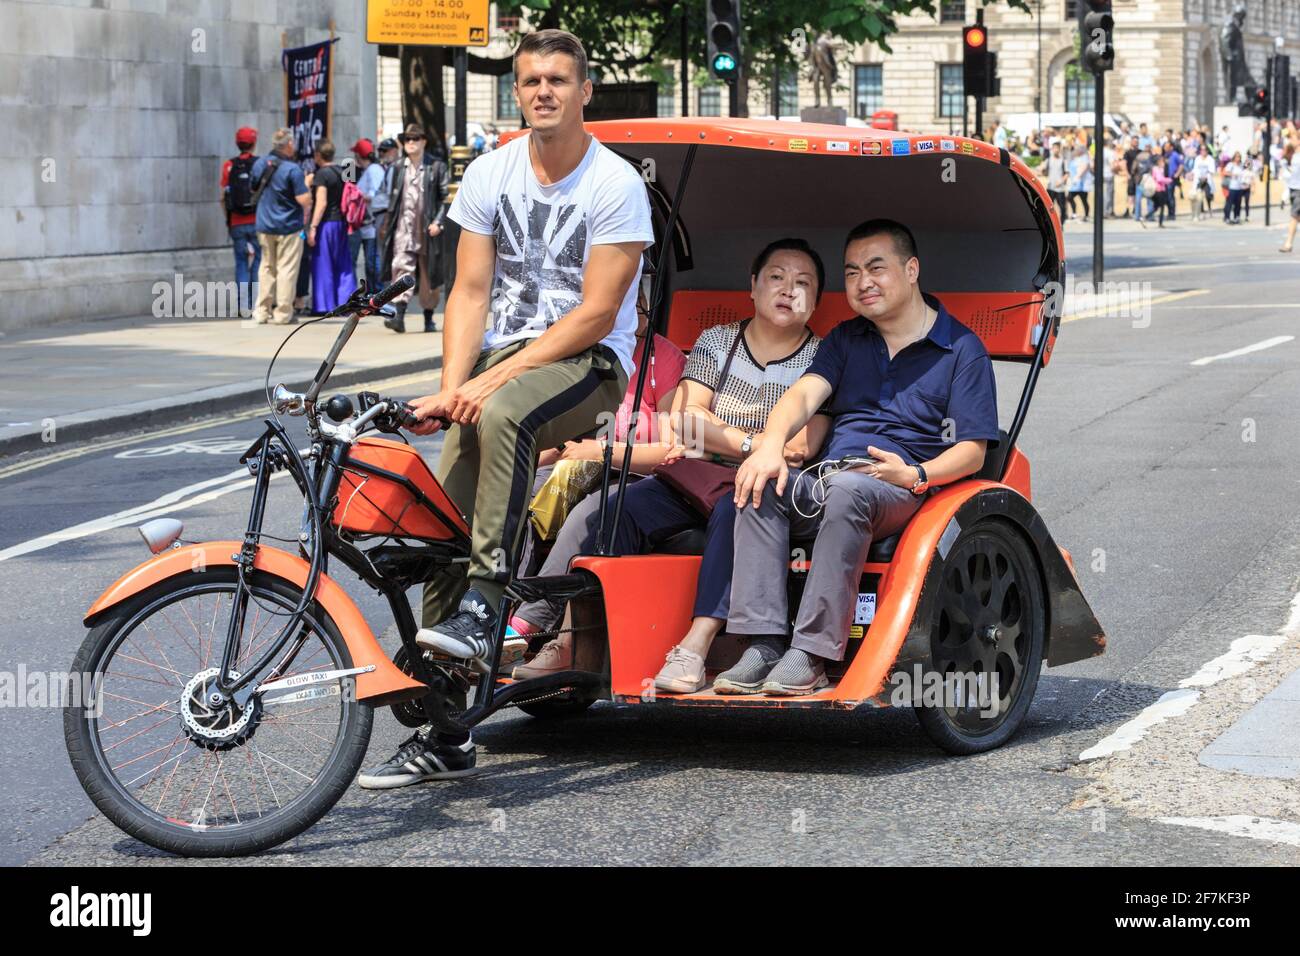 Asiatische Touristen auf einer Fahrrad-Rikscha (Fahrrad-Taxi oder Pediküre) in Westminster, London, England Stockfoto